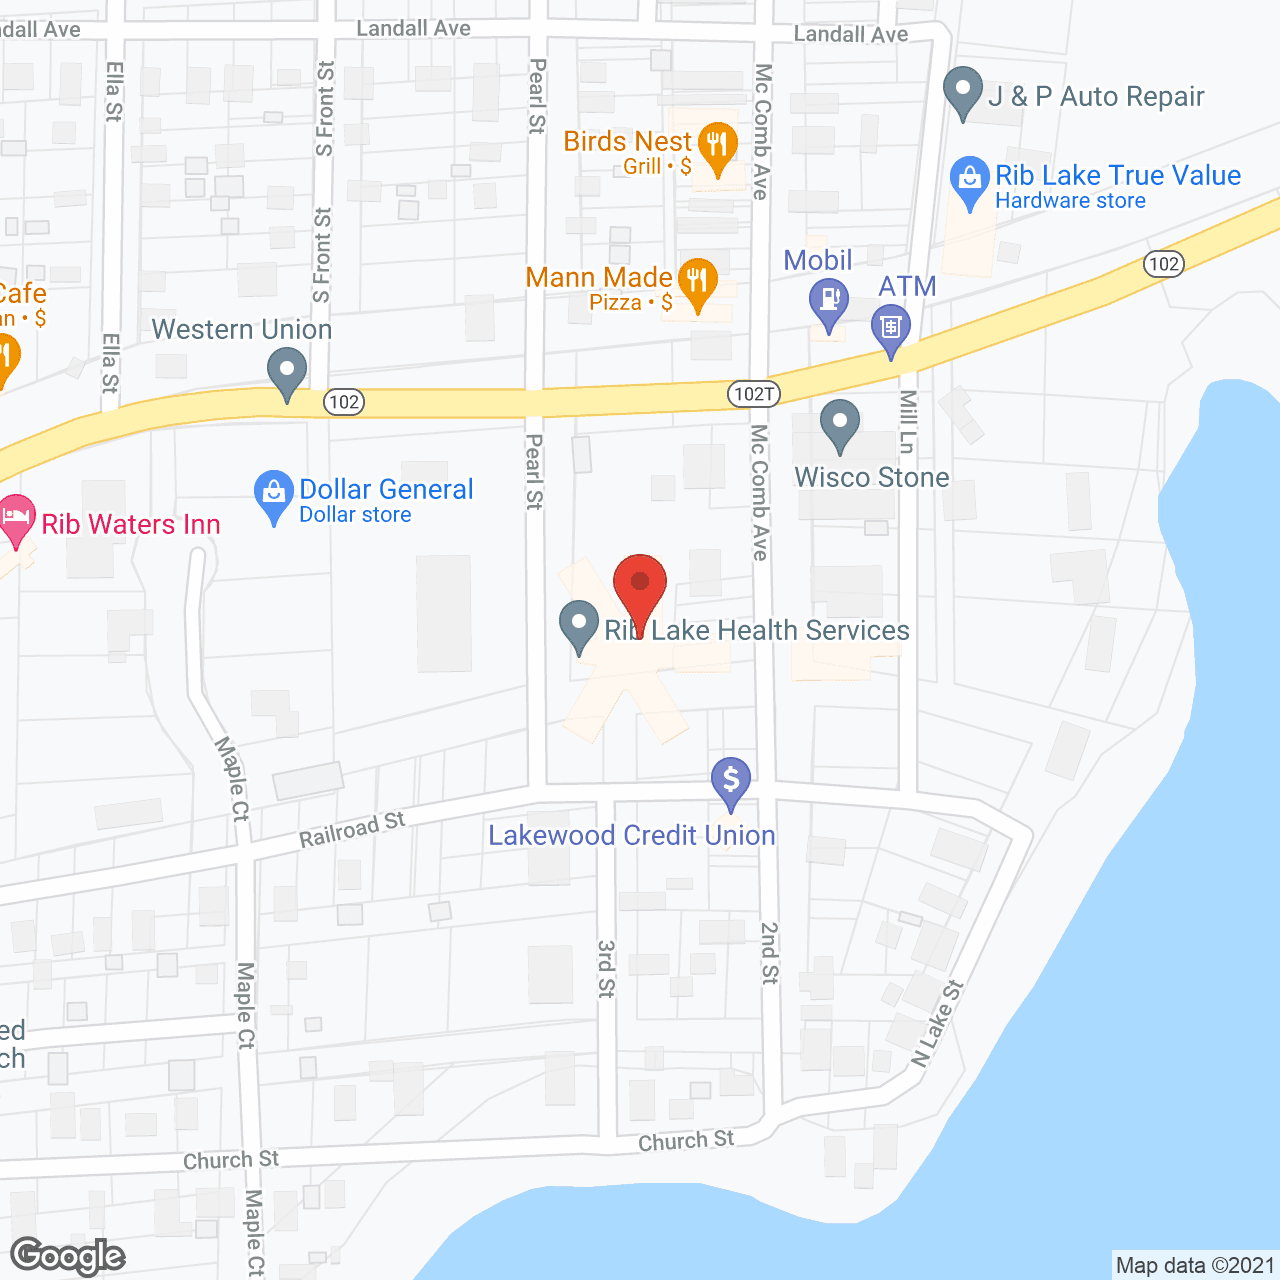 Golden Living Center Rib Lake in google map